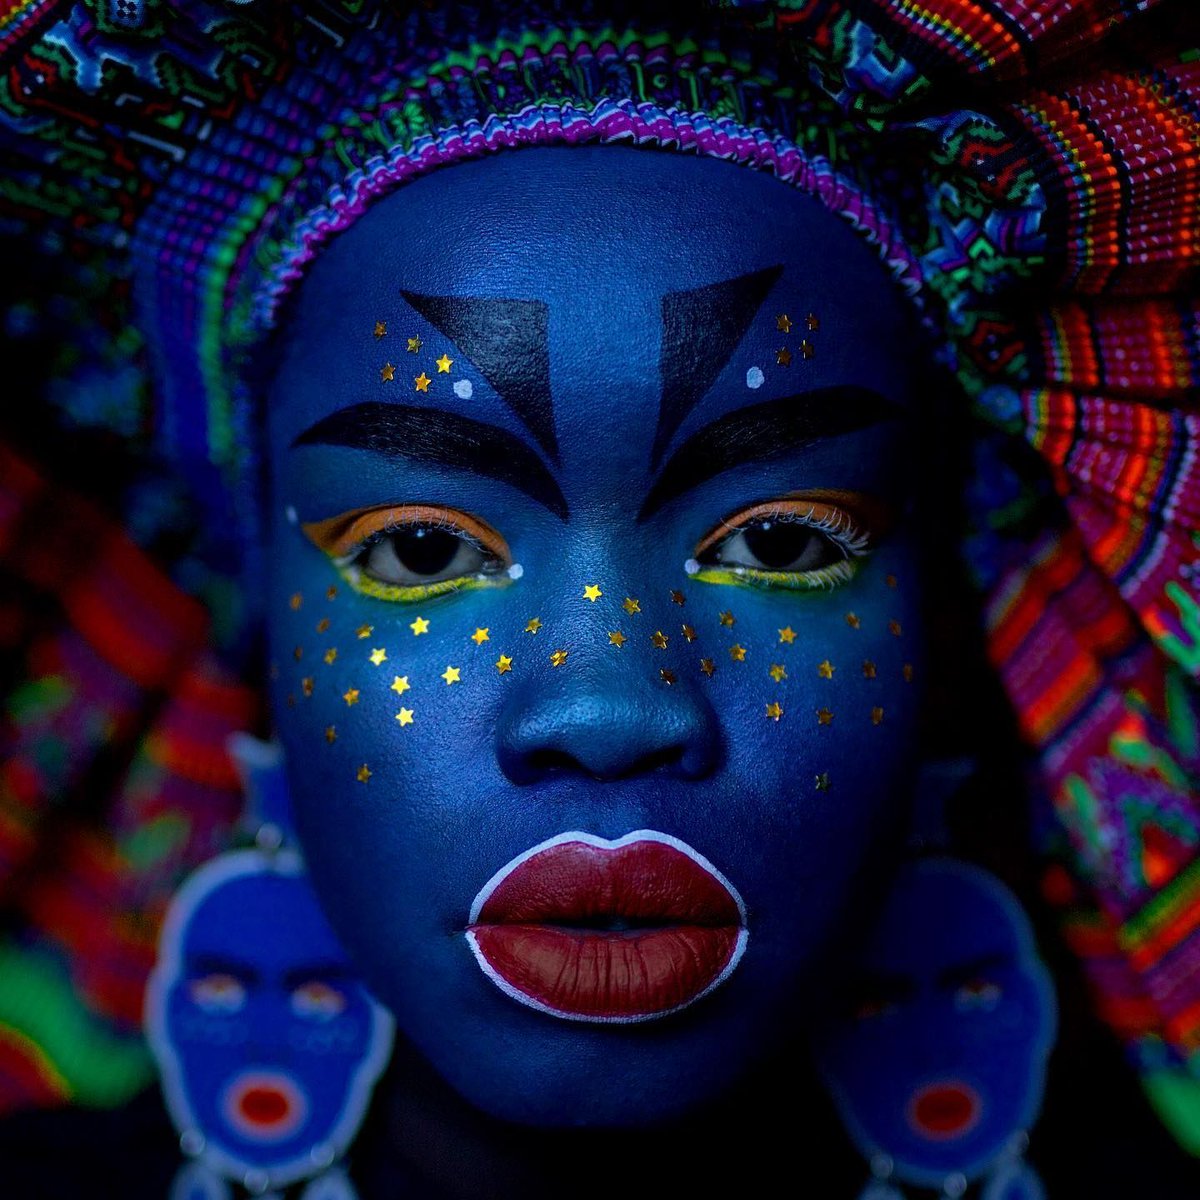 What powerful photography by Sudanese artist and writer @atongatem!  

#beautifulbizarre #atongatem #femaleartist #sudaneseartist #femalephotographer #portraiture #portraitphotography #boldart #colourfulart #colour #color #lips #beautifulphotography #photooftheday